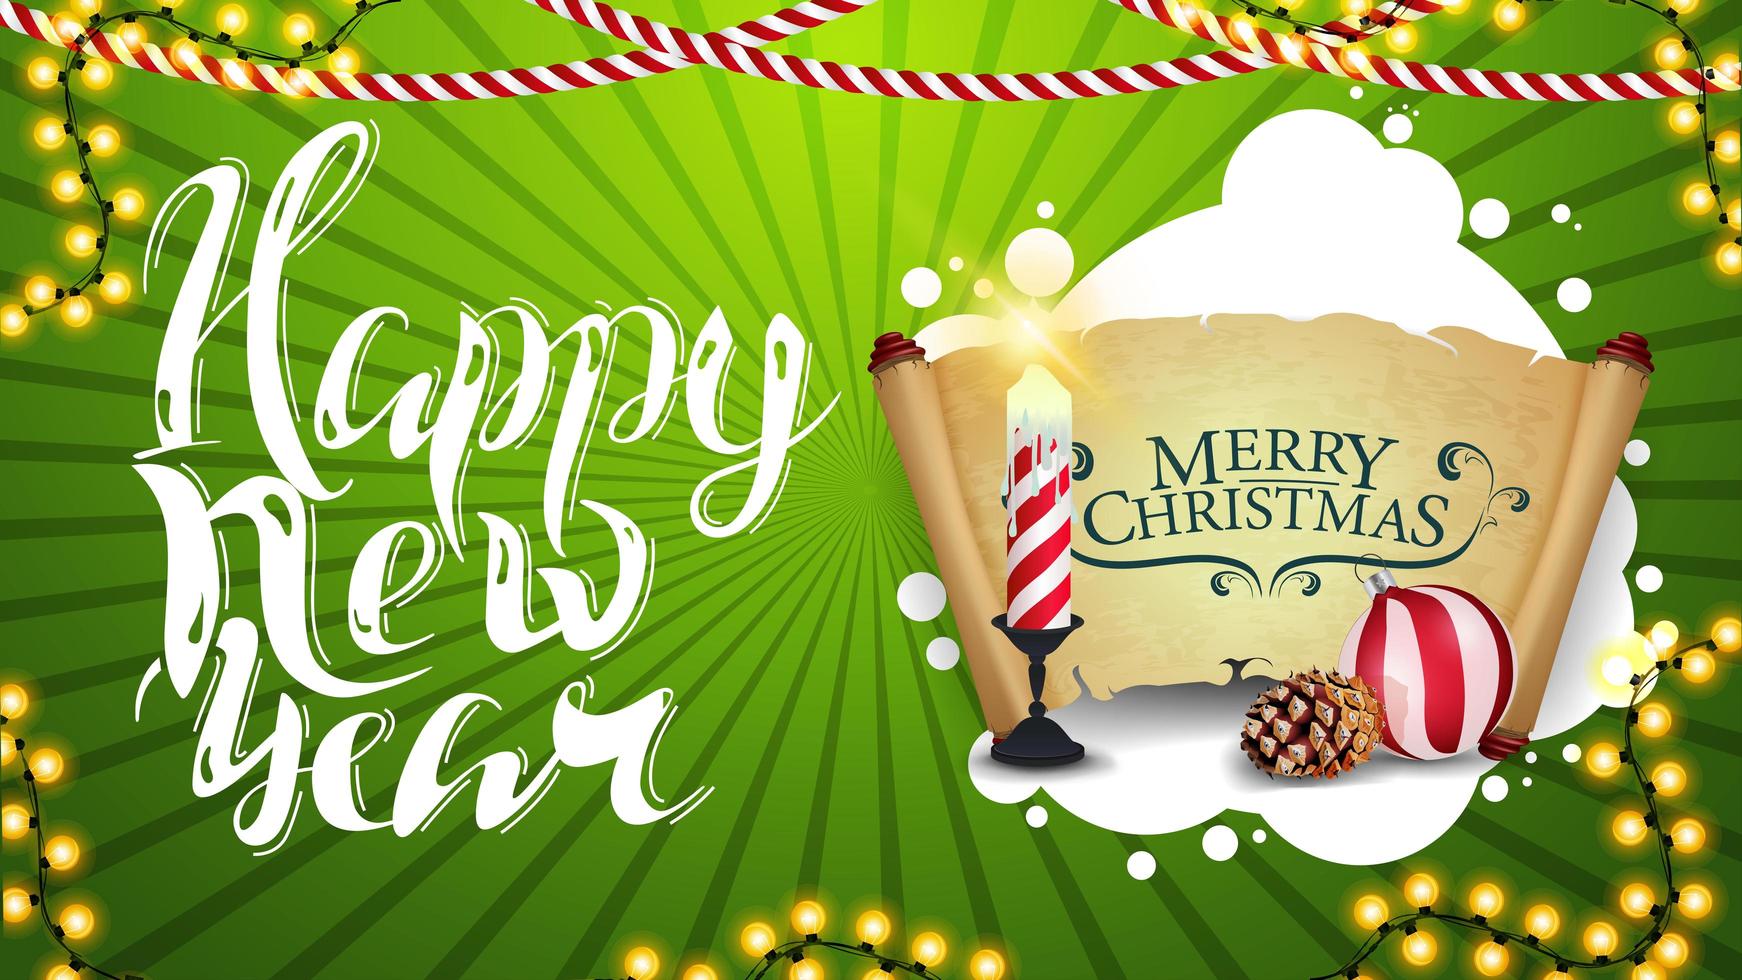 gott nytt år, grönt horisontellt gratulationskort med vacker bokstäver, juldekor, ljus, gammalt pergament, julboll och kon vektor